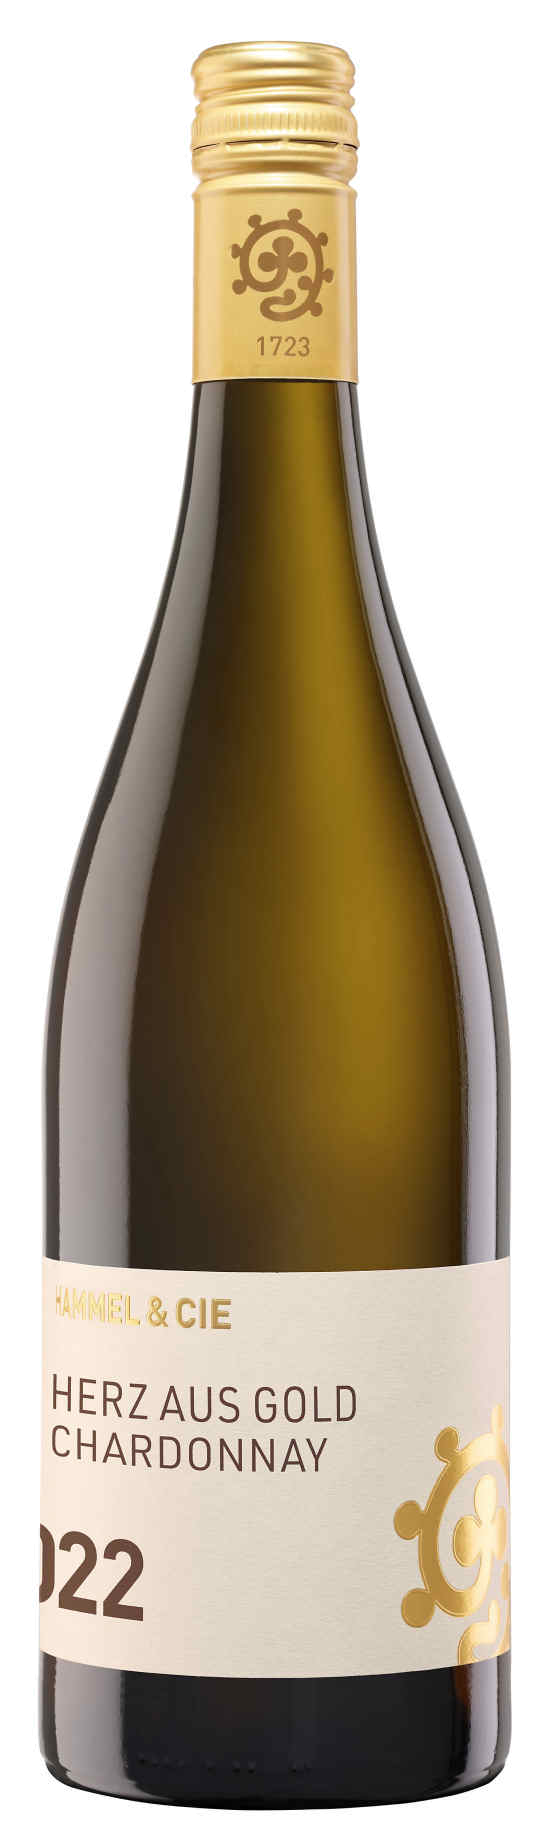 Hammel & Cie Herz aus Gold Chardonnay